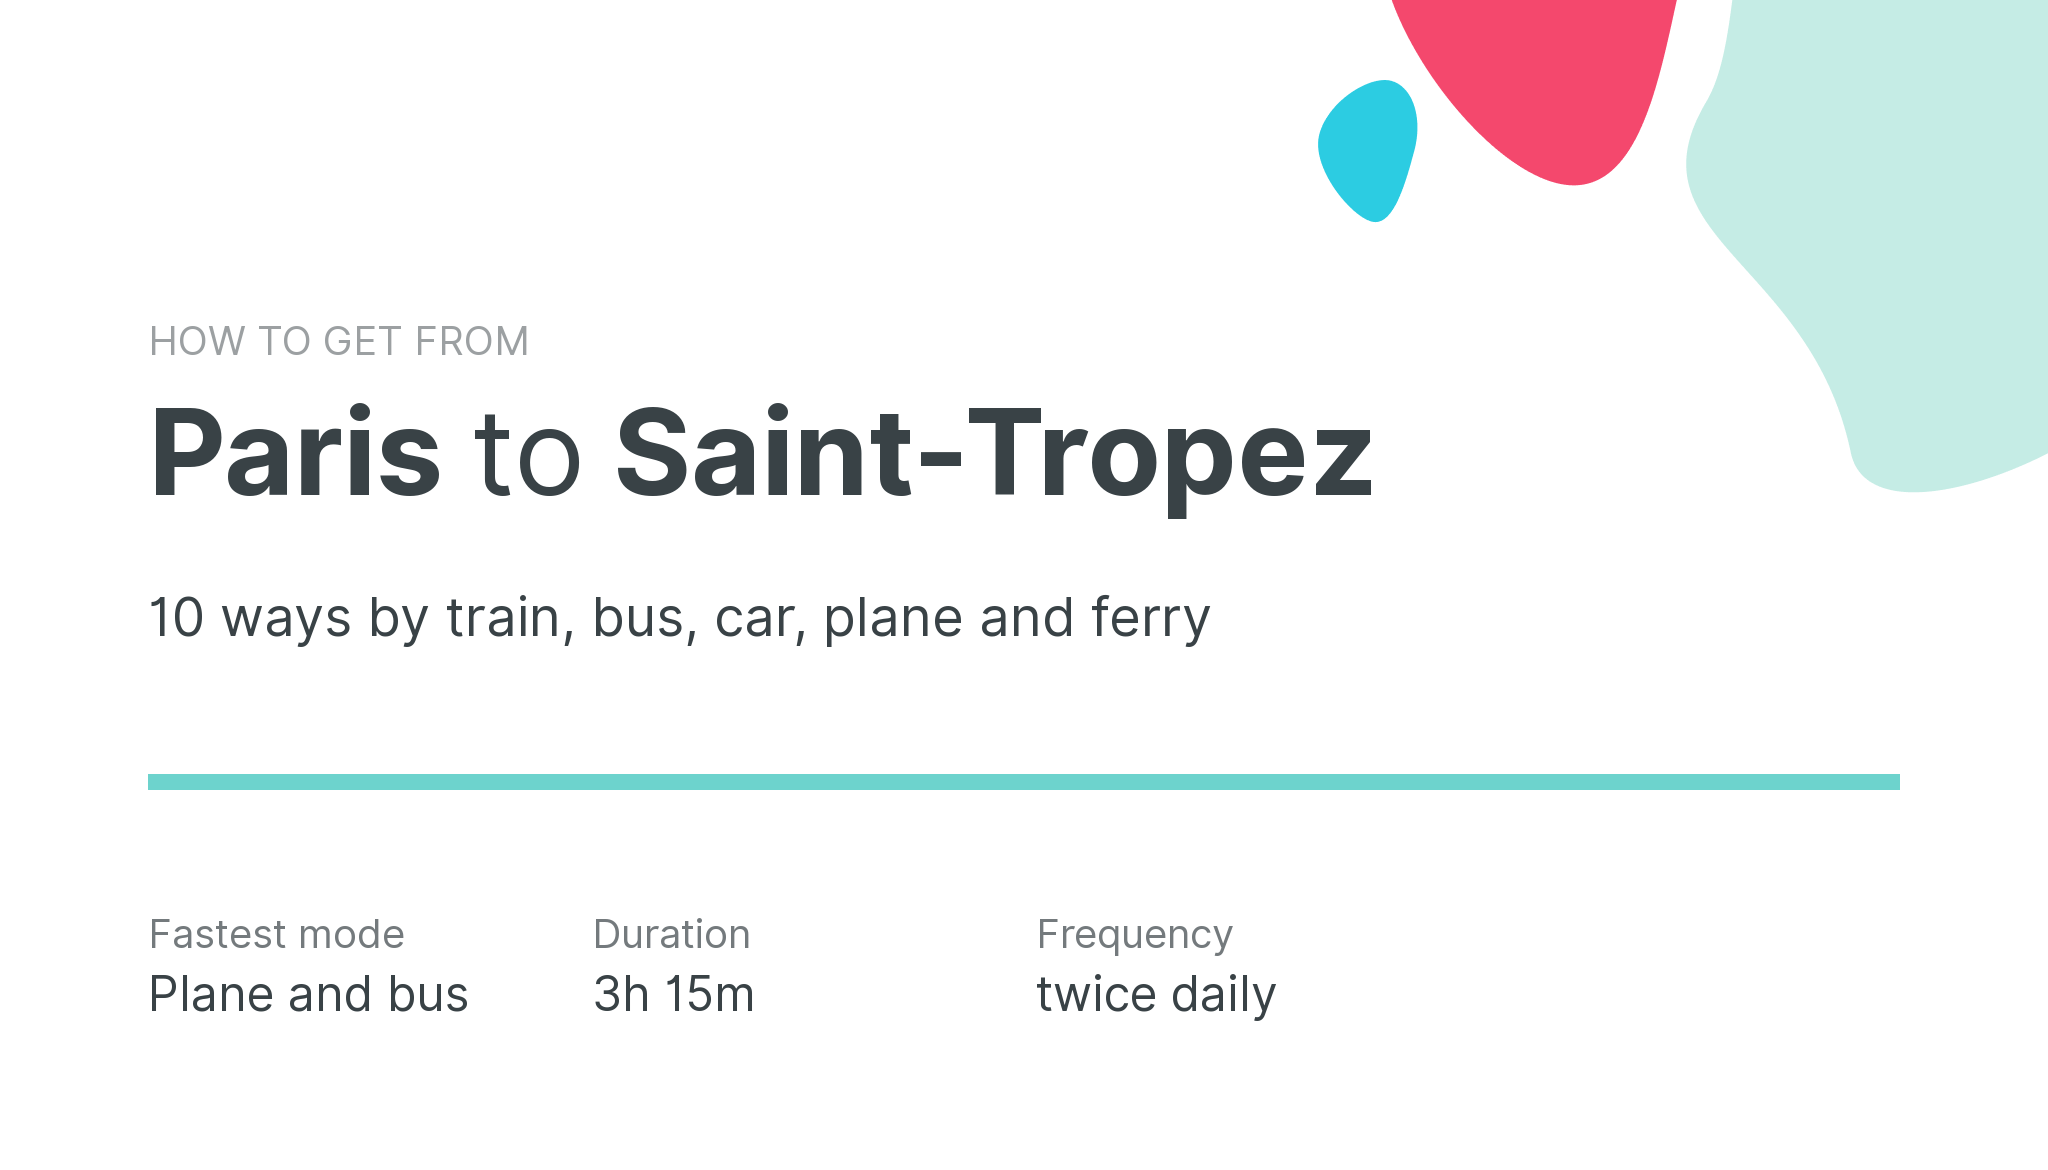 How do I get from Paris to Saint-Tropez